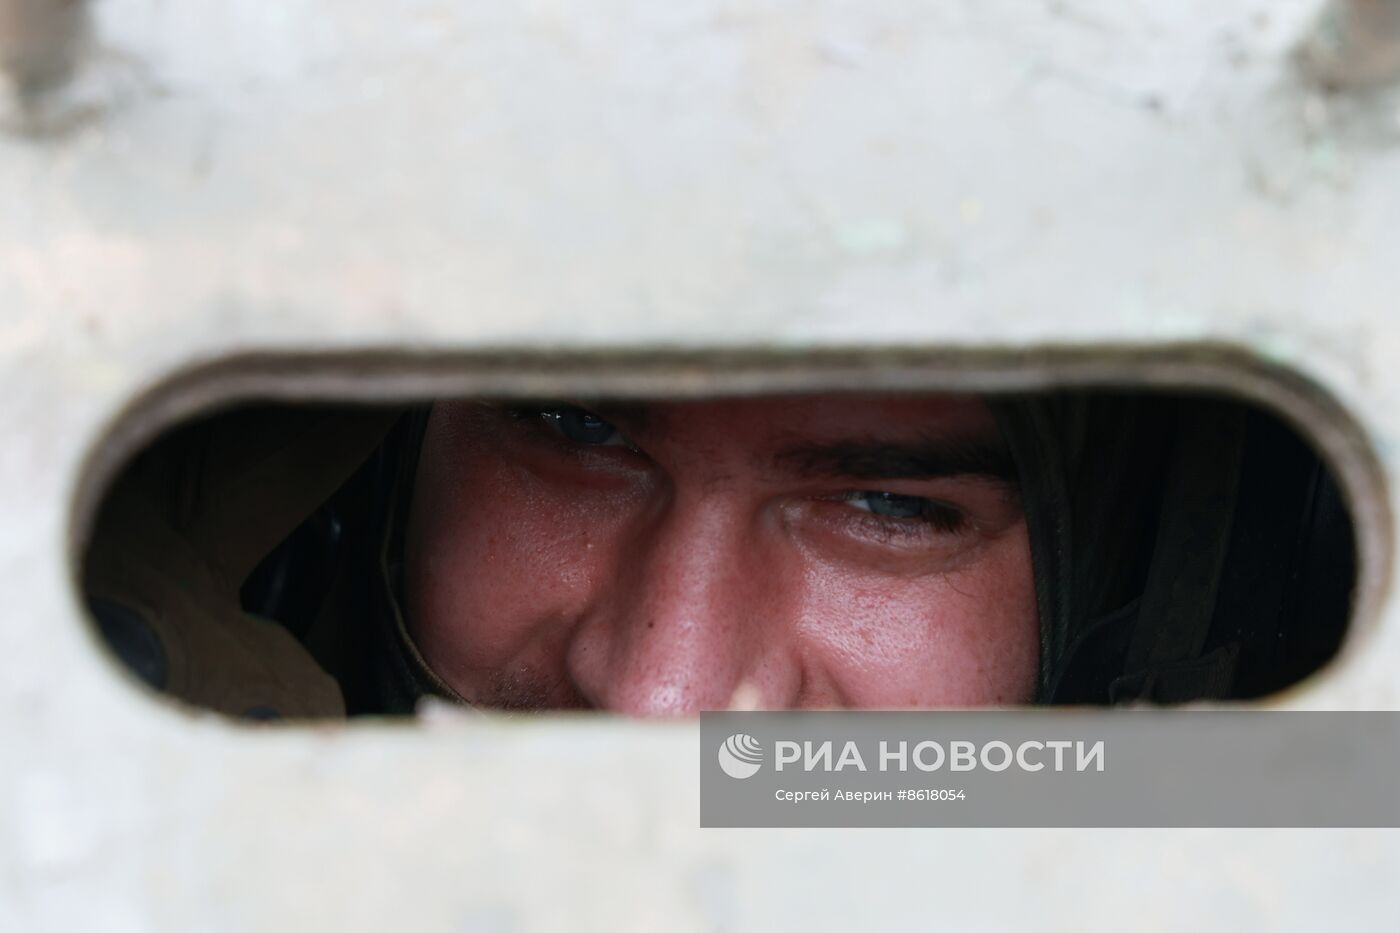 Зенитно-ракетное подразделение Ивановского соединения ВДВ в зоне спецоперации в ЛНР